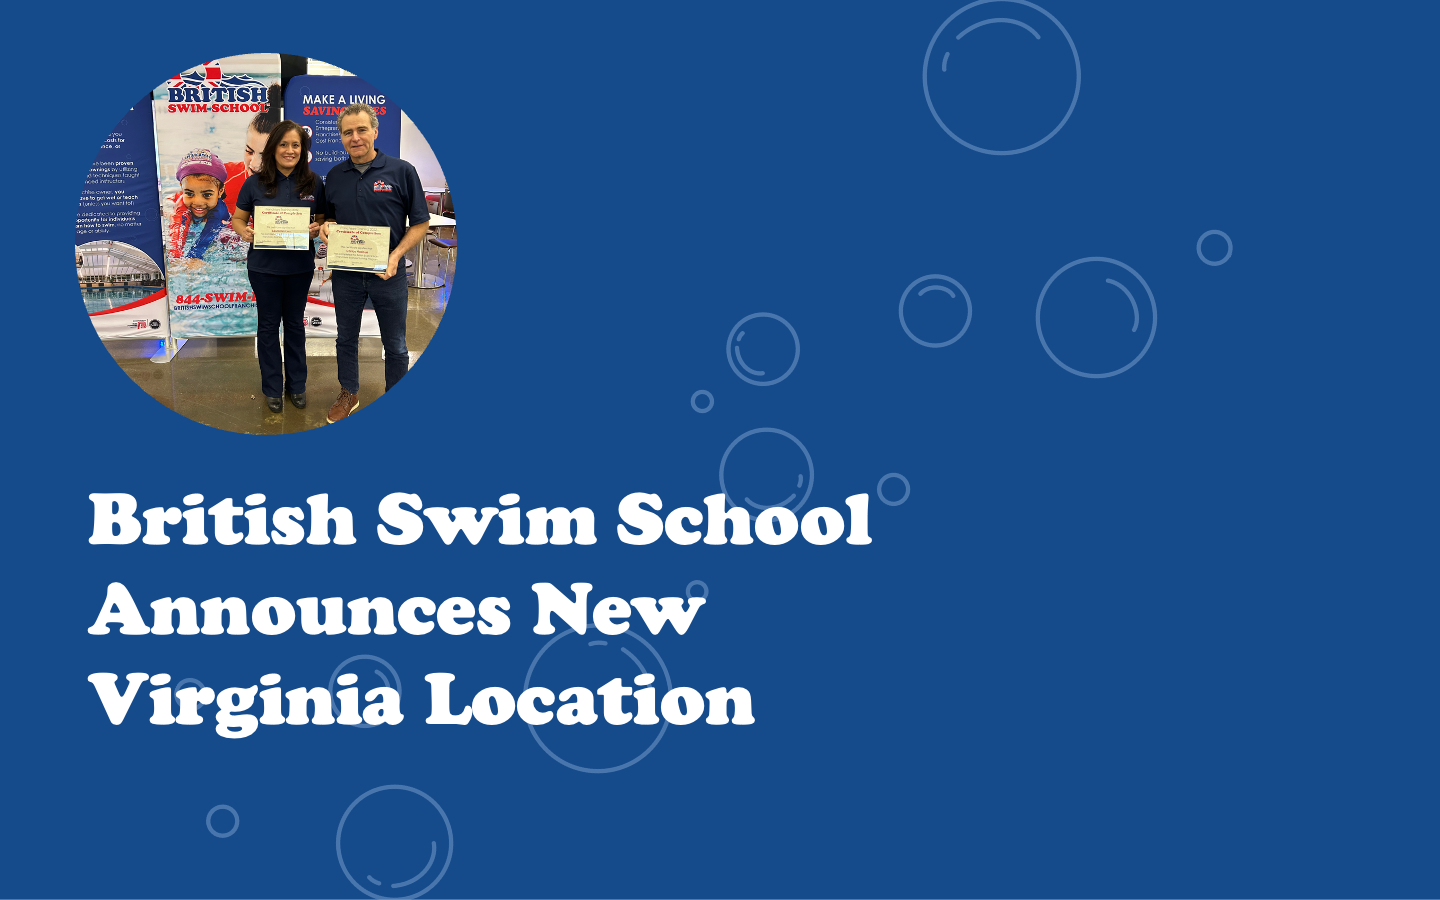 Image of British Swim School Announces New Virginia Location